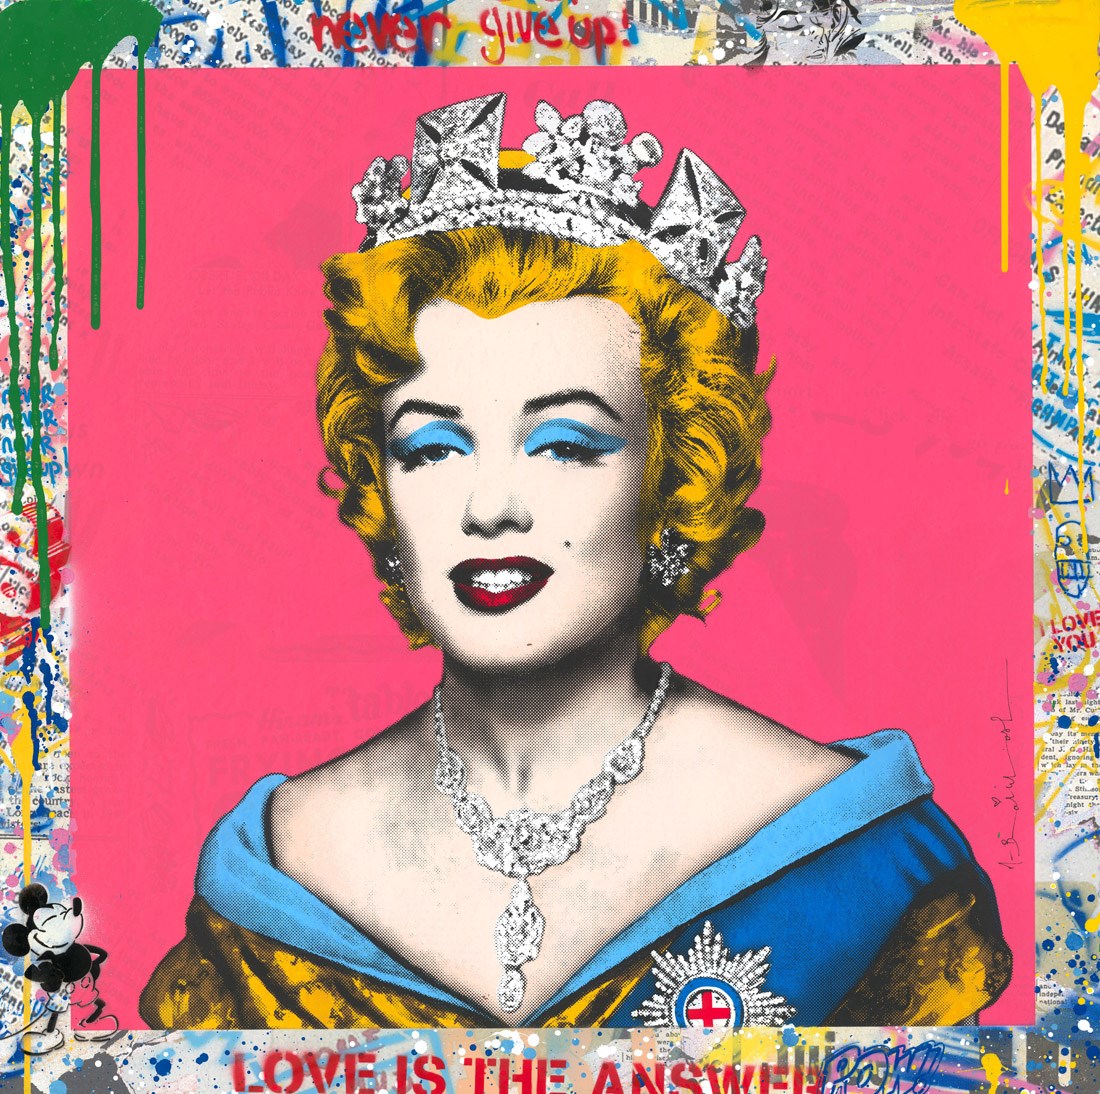 Queen Marilyn - Pink